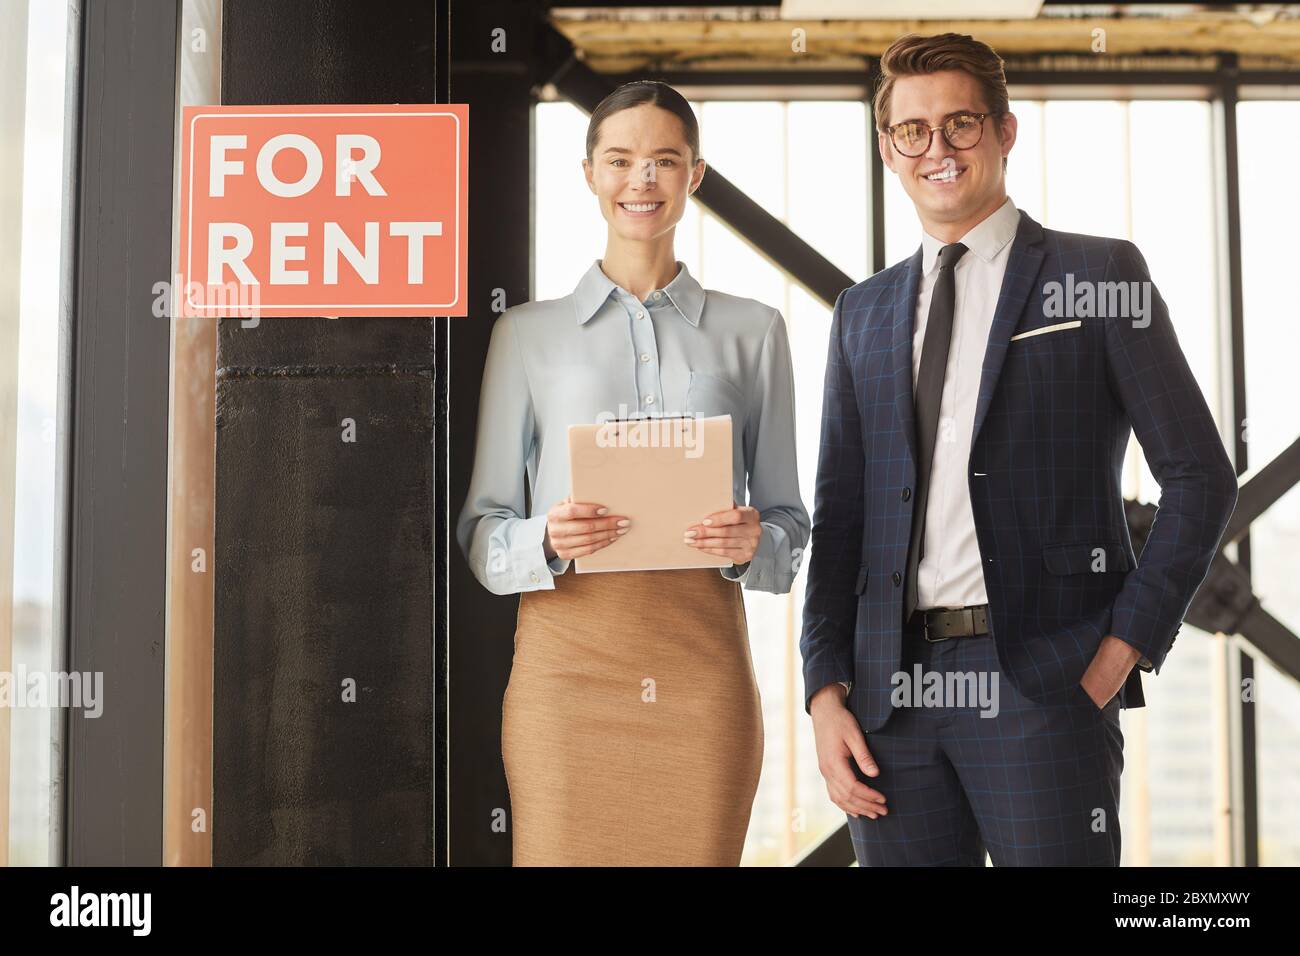 Portrait à la taille de deux agents immobiliers souriant à l'appareil photo tout en se tenant à côté de l'affiche ROUGE POUR LOUER, espace de copie Banque D'Images